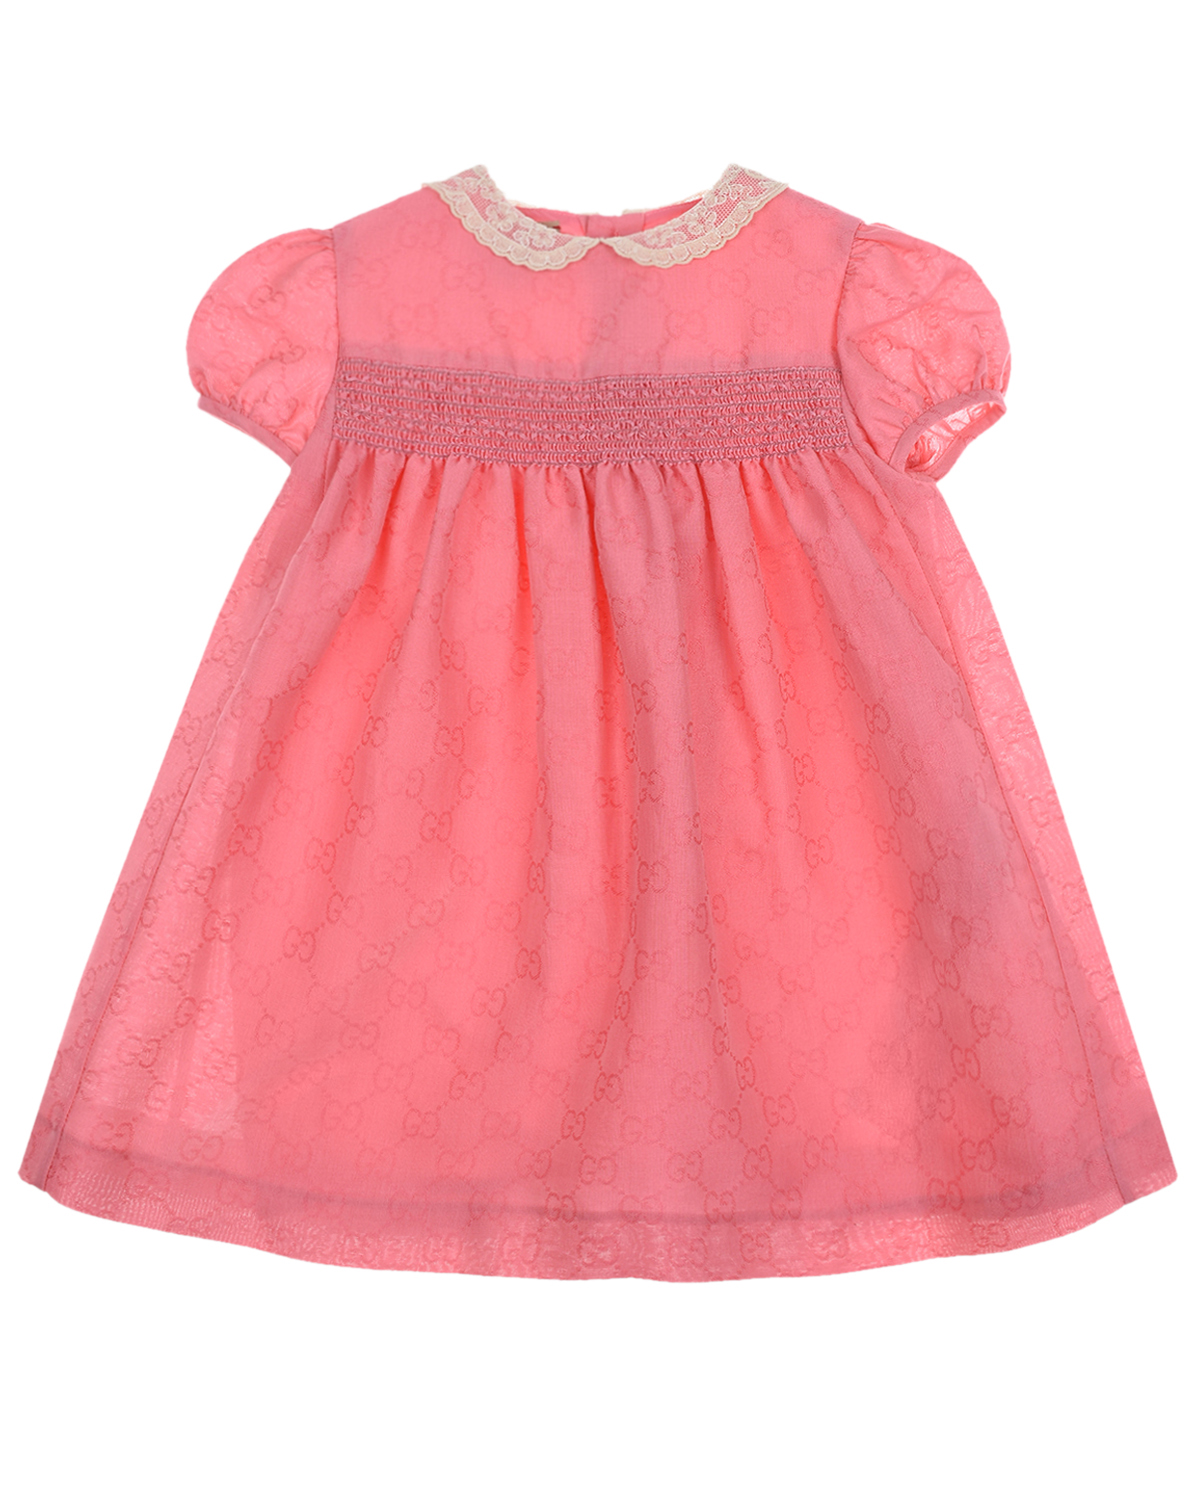 Купить Розовое платье с кружевным воротником GUCCI детское, Розовый, 100%хлопок, 75%полиэстер+25%вискоза